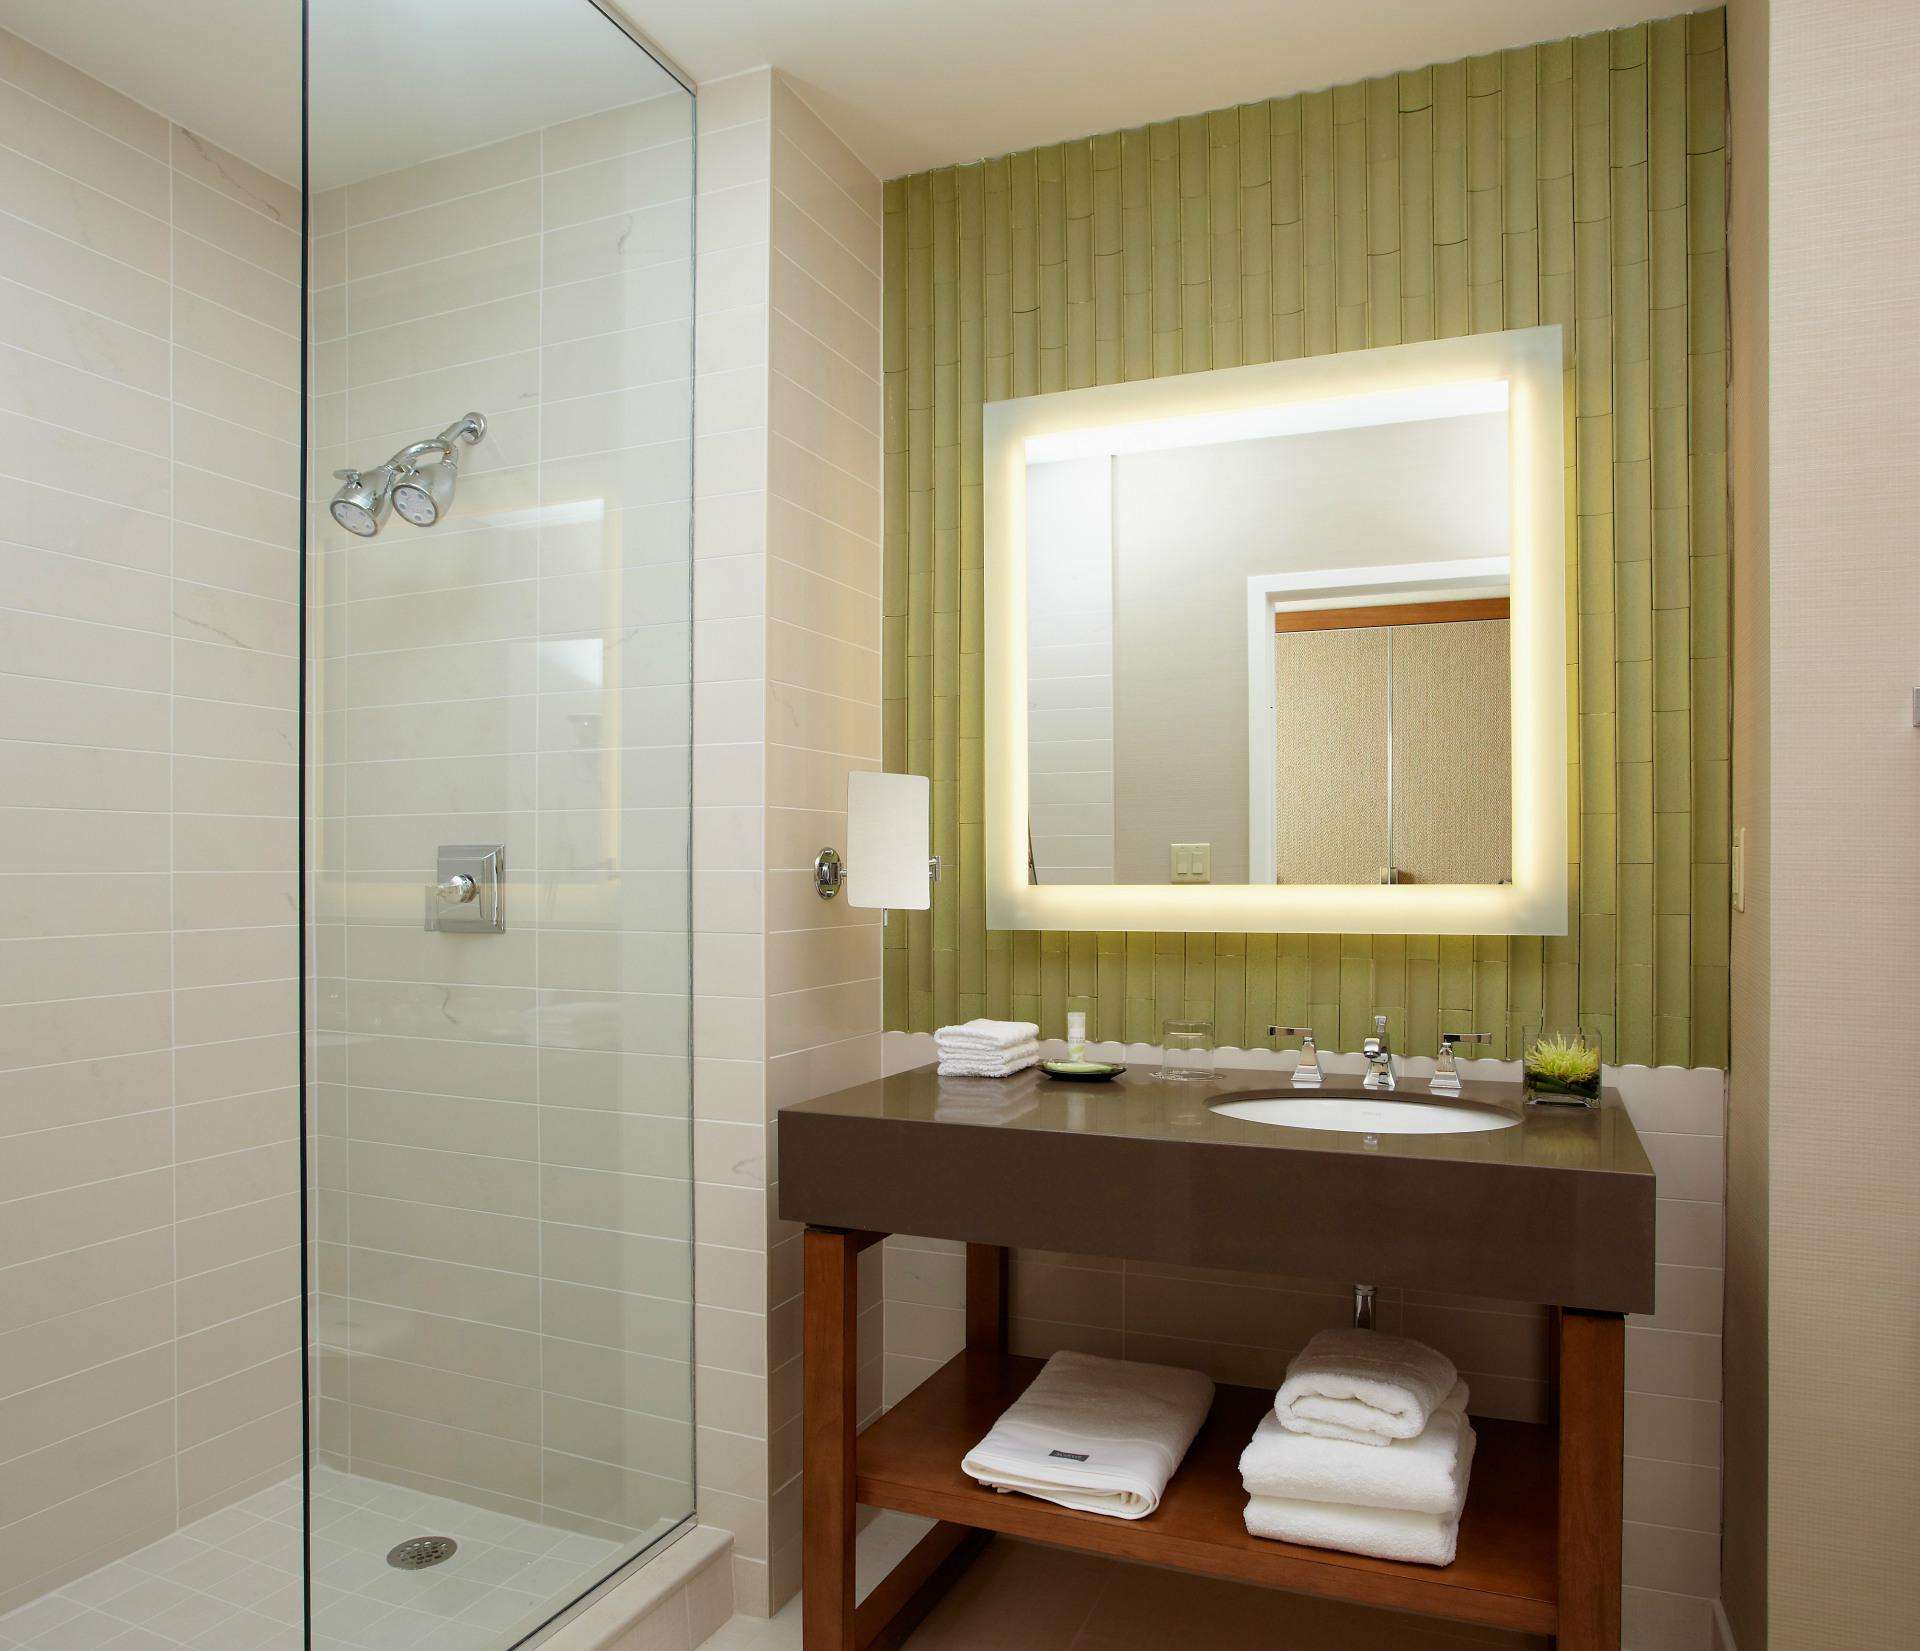 浴室镜如何设计才能提升浴室格调